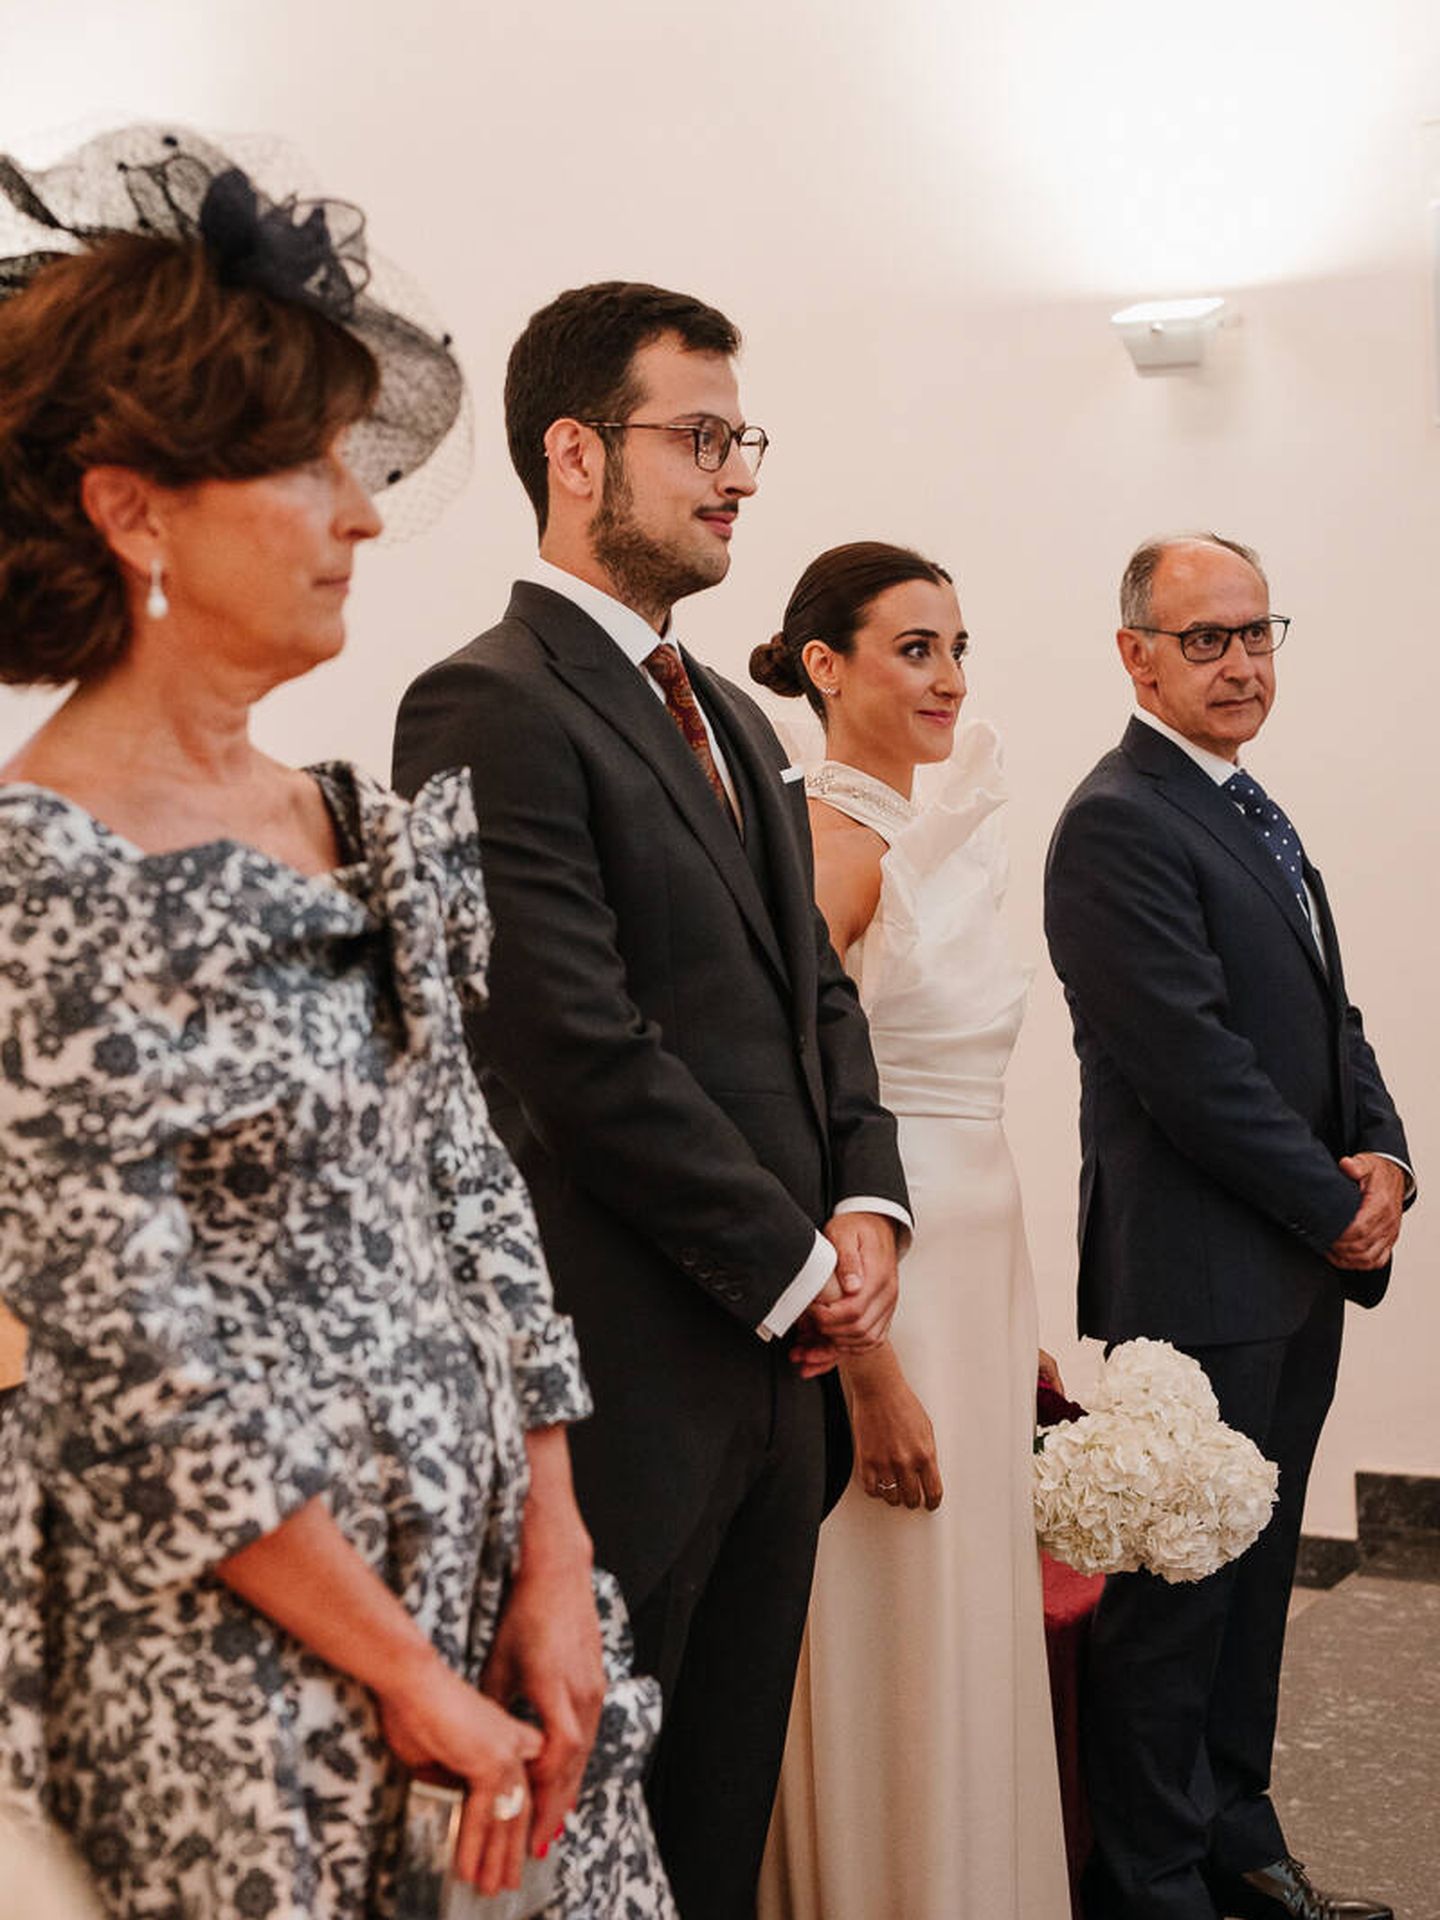 La boda de Silvia en una bodega familiar de La Rioja. (Días de vino y rosas)